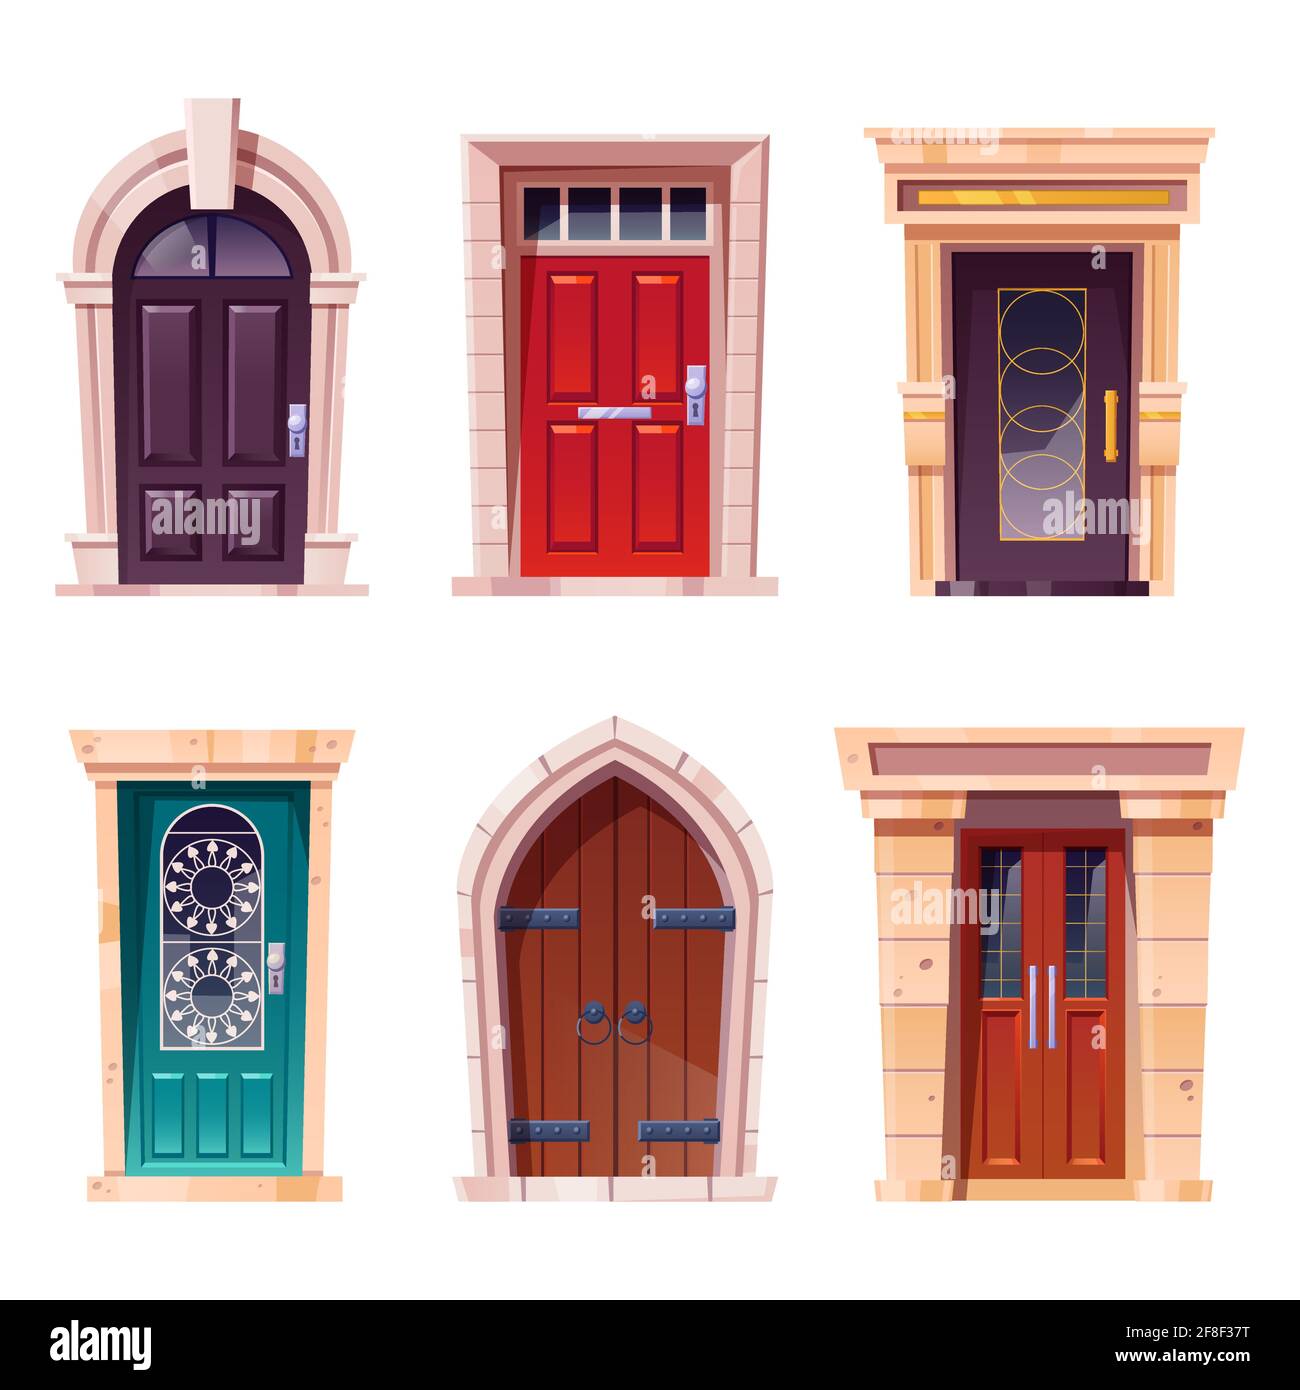 Puertas de madera, entradas de estilo medieval y moderno con portones de  piedra, asas metálicas y ranura para correo. Objetos de arquitectura,  elementos de diseño exterior de casas de campo o castillos,